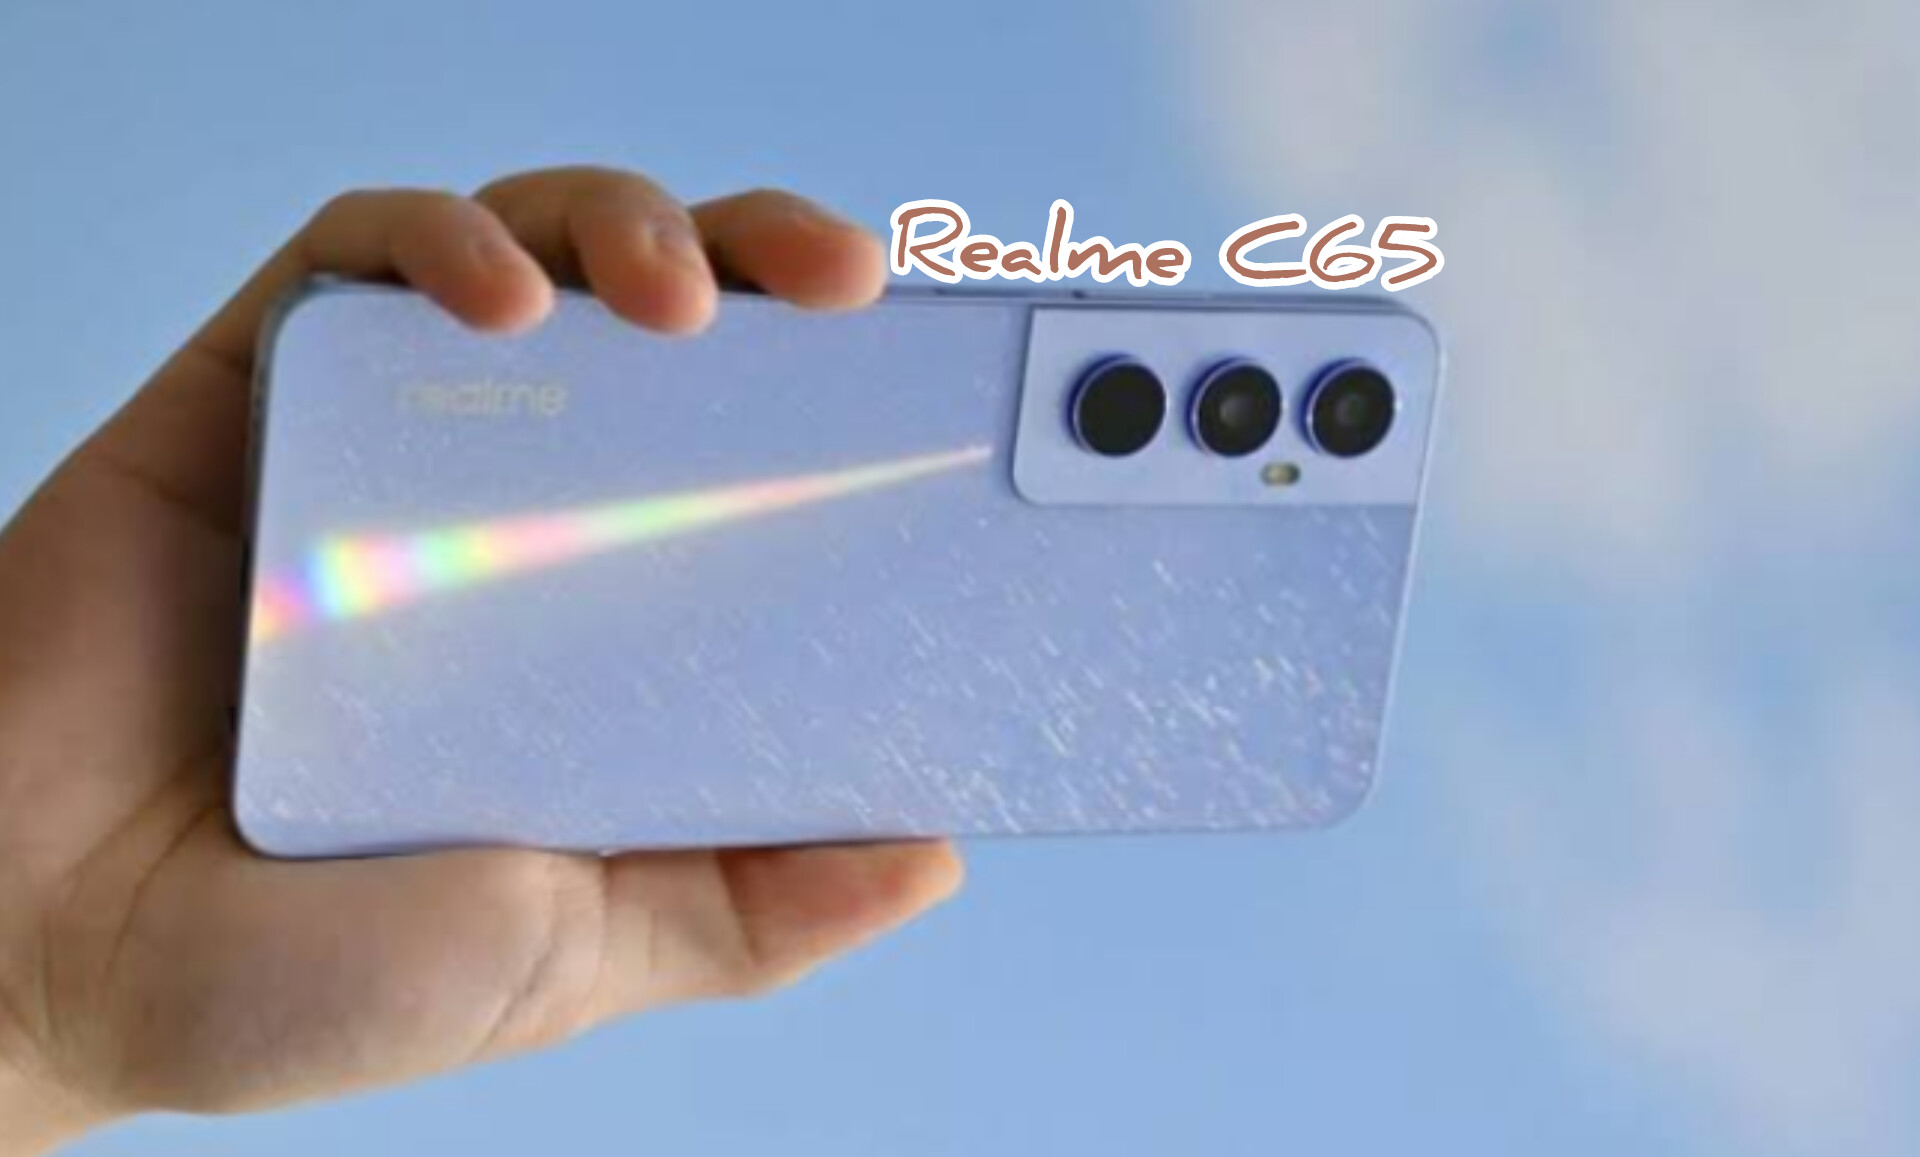 Harga Terjangkau Cuma Rp2 Jutaan, Realme C65 Ditenagai Chipset MediaTek Helio G85 dan Tampilan Desain Premium